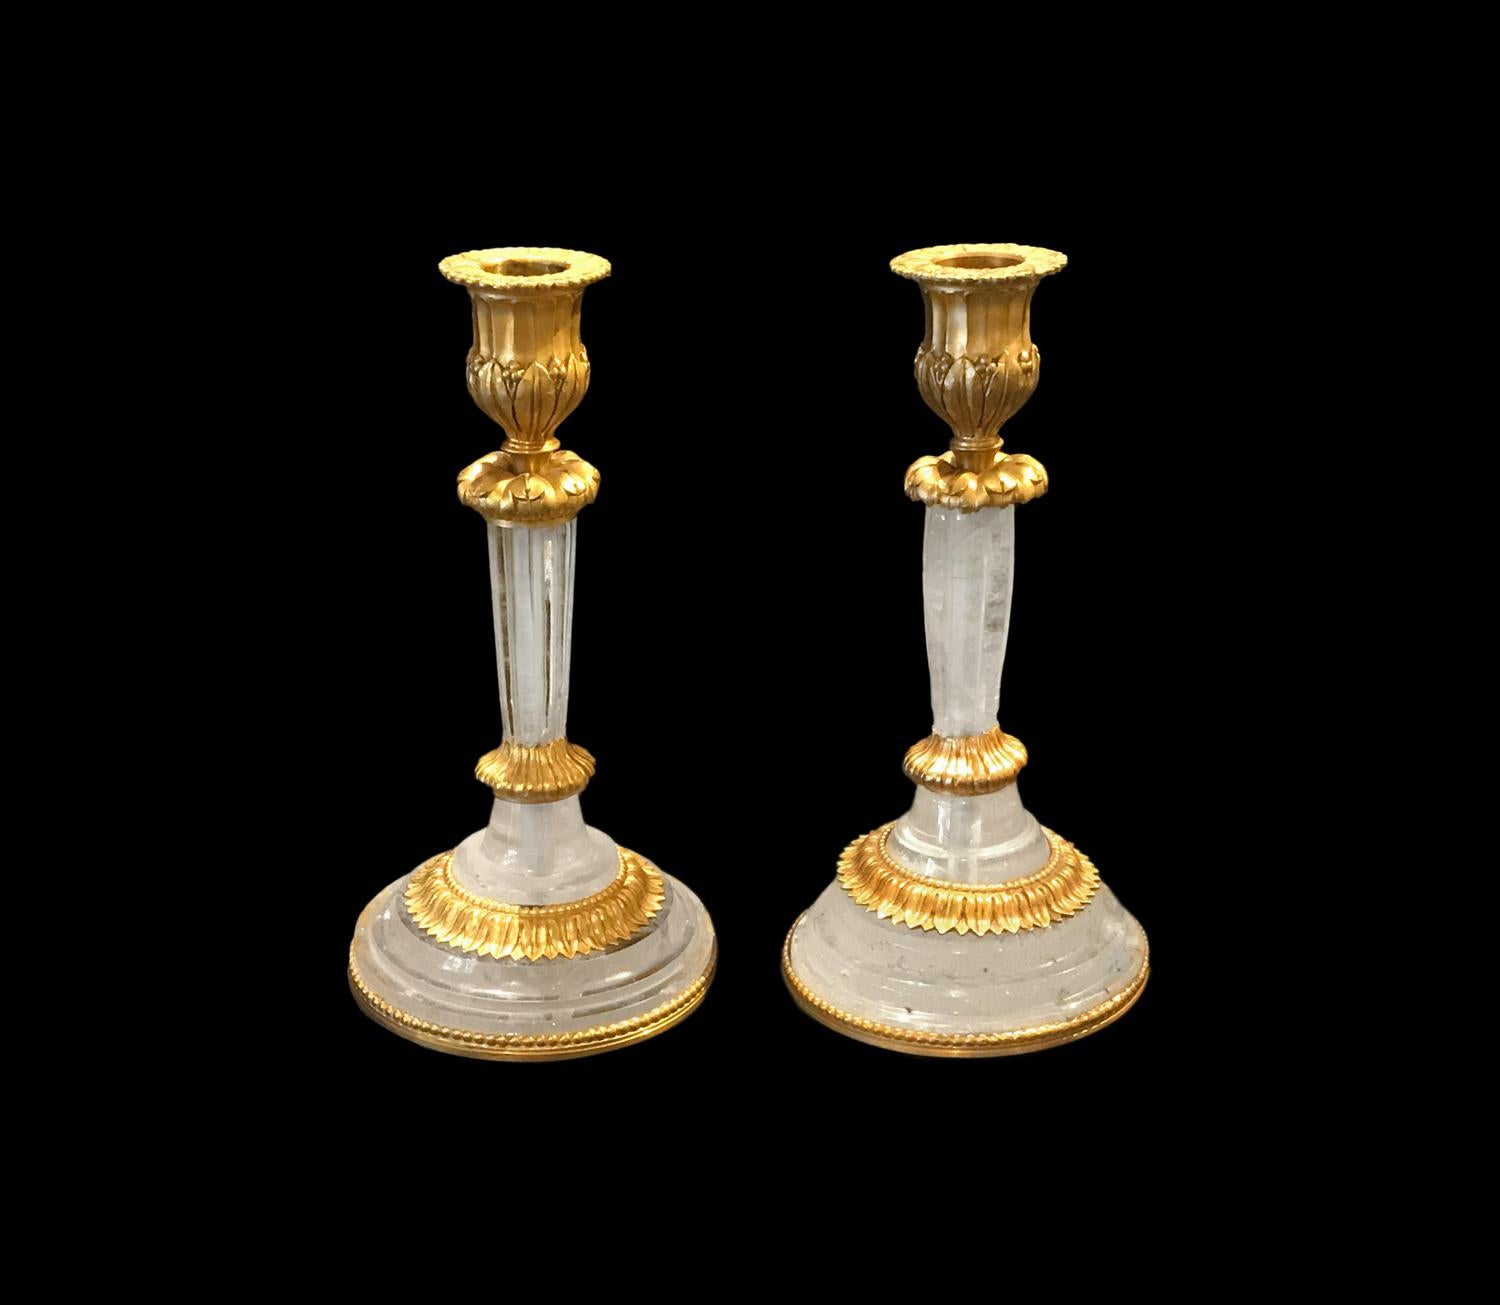 Paire de chandeliers en cristal de roche sur une monture en bronze doré de style Louis XVI. Base circulaire moulurée avec des ornements en bronze doré tels que des frises de perles et de feuilles d'eau, également visibles sur le binet.

Très beau